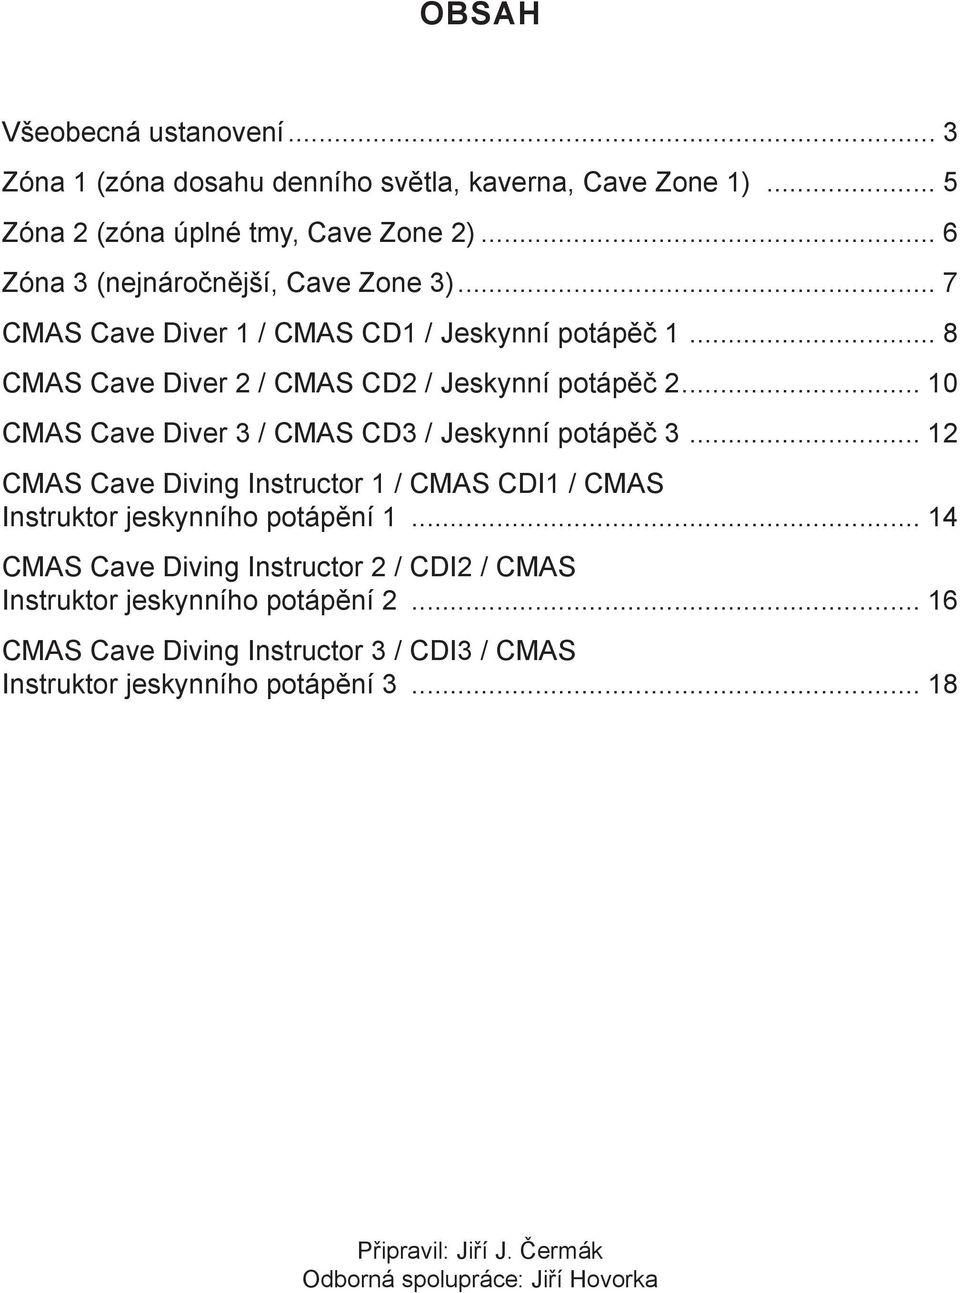 .. 10 CMAS Cave Diver 3 / CMAS CD3 / Jeskynní potápěč 3... 12 CMAS Cave Diving Instructor 1 / CMAS CDI1 / CMAS Instruktor jeskynního potápění 1.